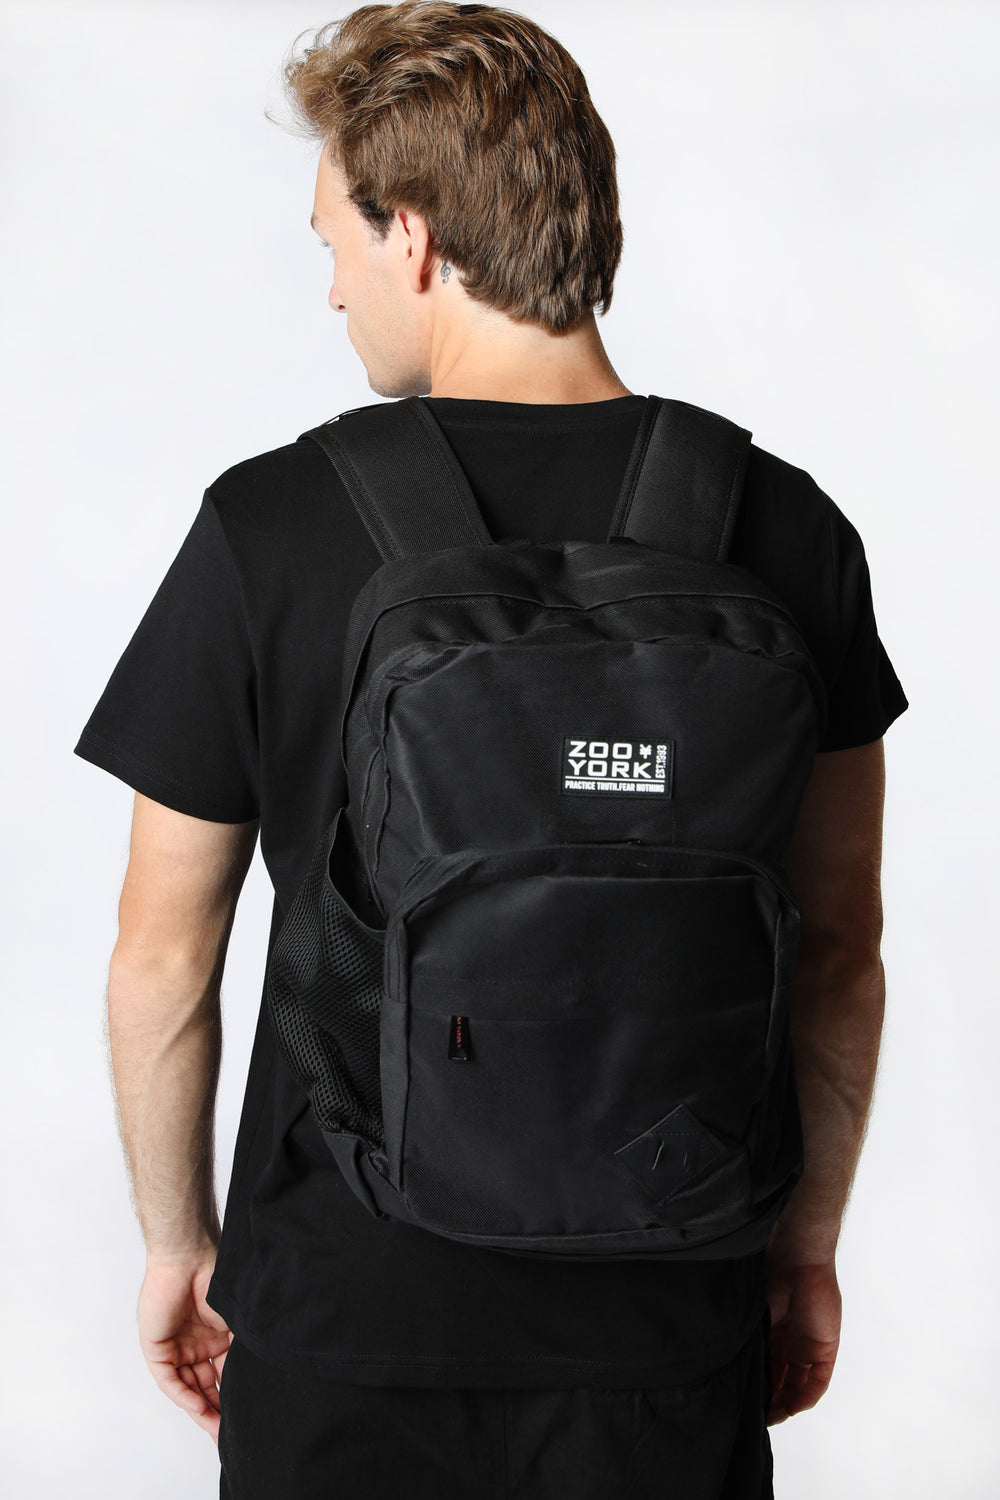 Zoo York Solid Black Backpack Black